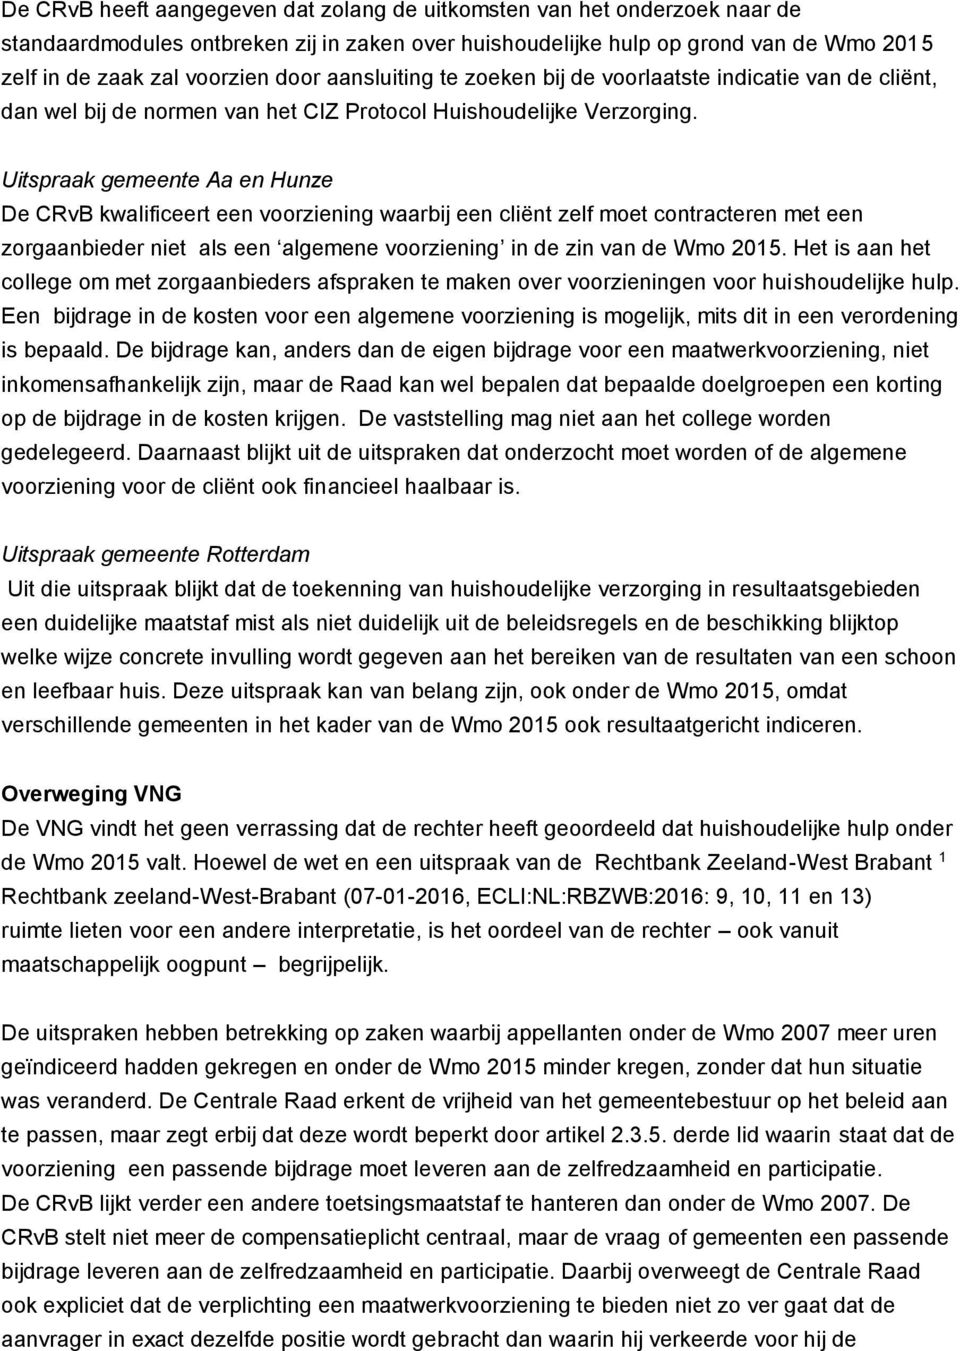 Uitspraak gemeente Aa en Hunze De CRvB kwalificeert een voorziening waarbij een cliënt zelf moet contracteren met een zorgaanbieder niet als een algemene voorziening in de zin van de Wmo 2015.